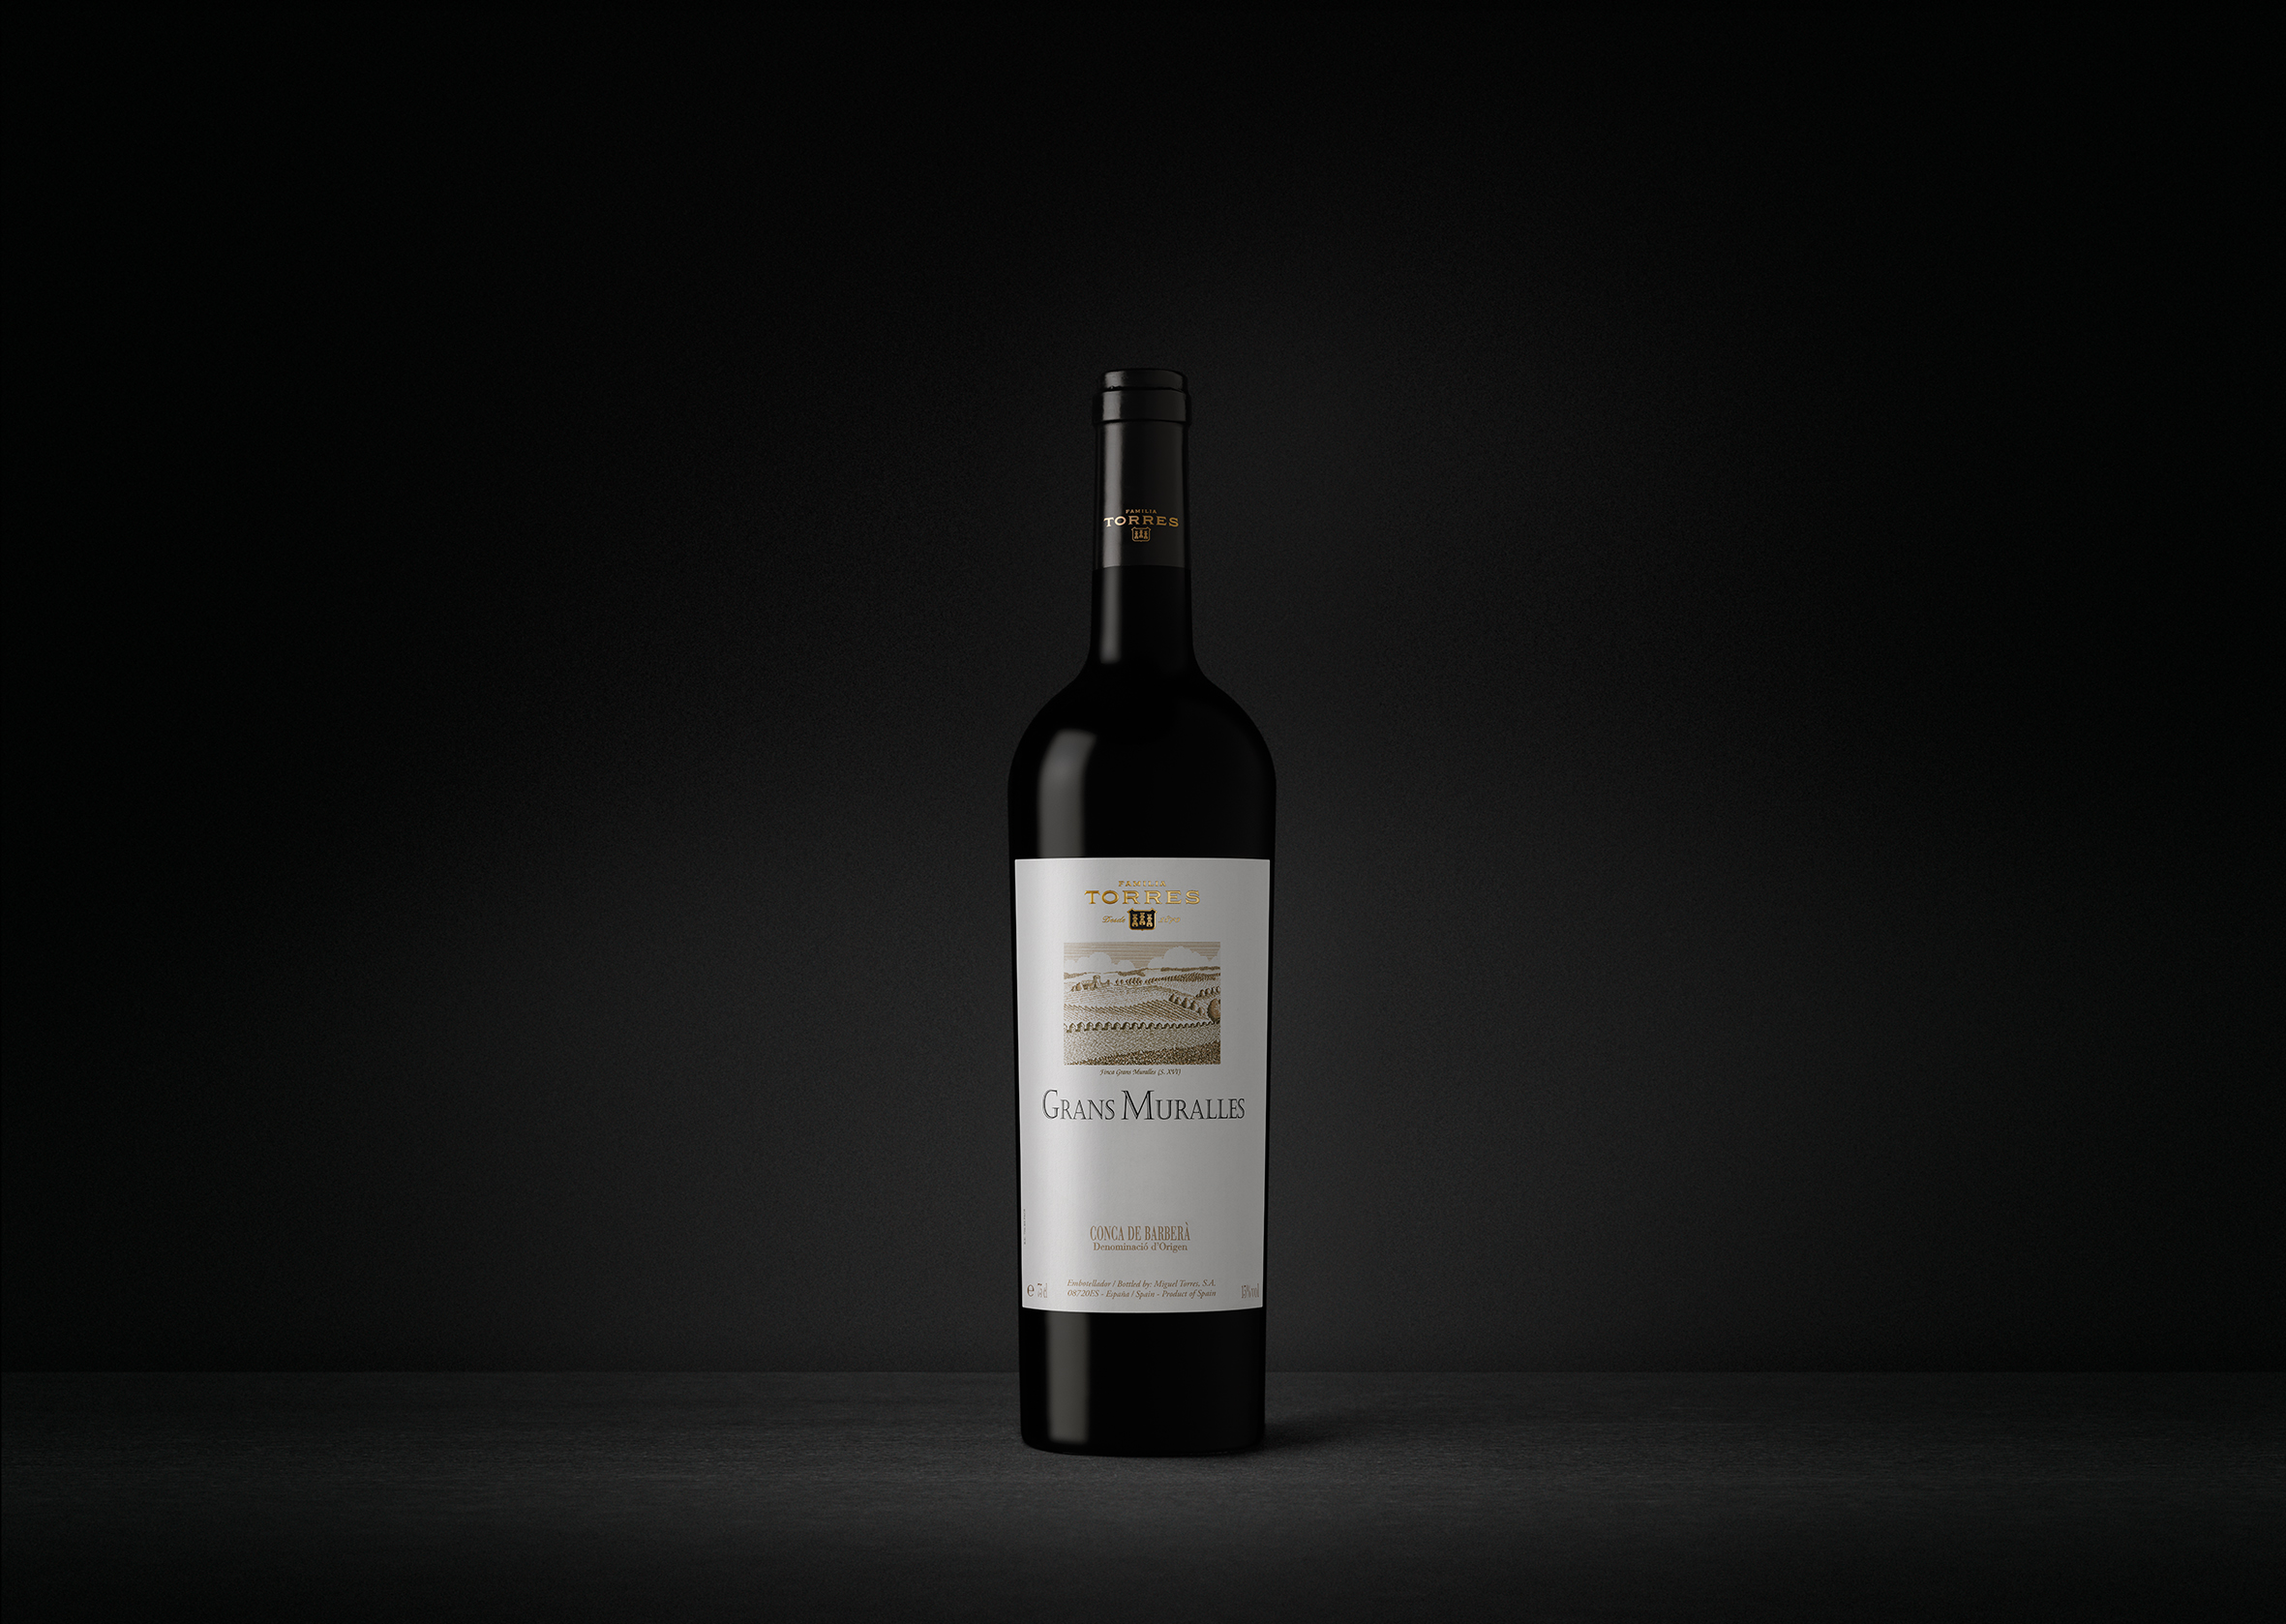 Grans Muralles es un vino tinto de la denominación de origen Conca de Barberà.